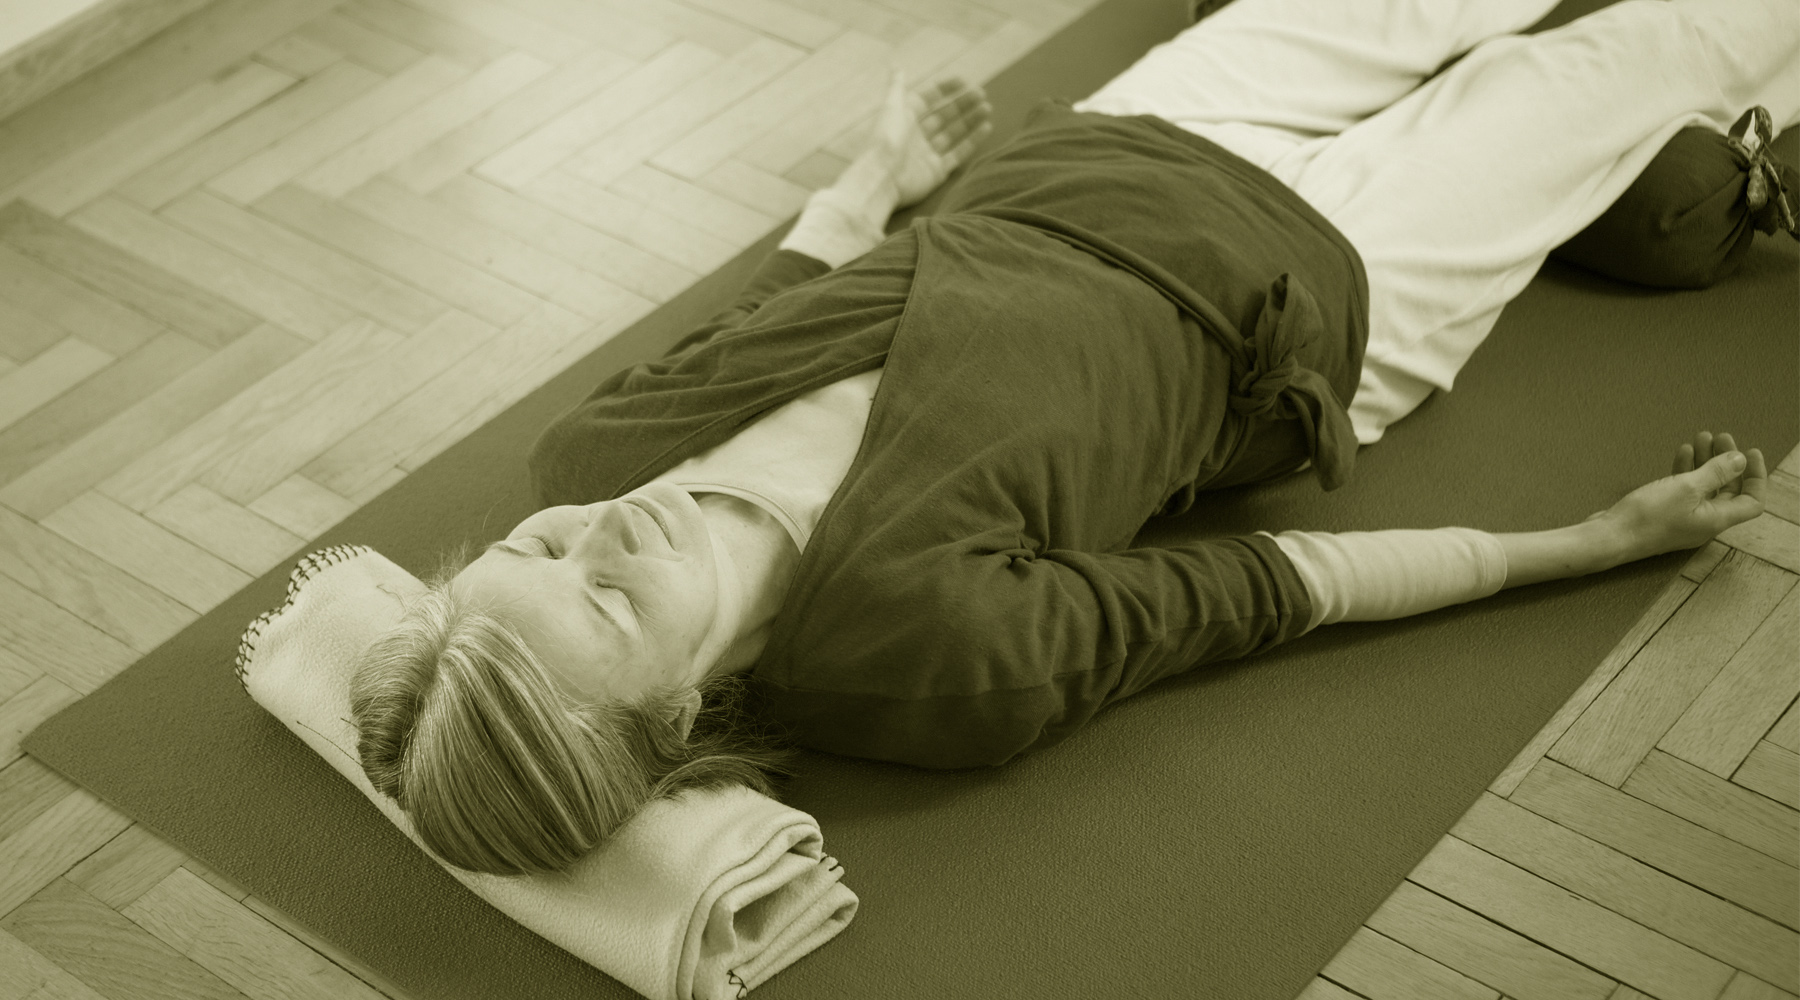  Neu im Yoga-Blog: Entspannung als integraler Teil von Yoga